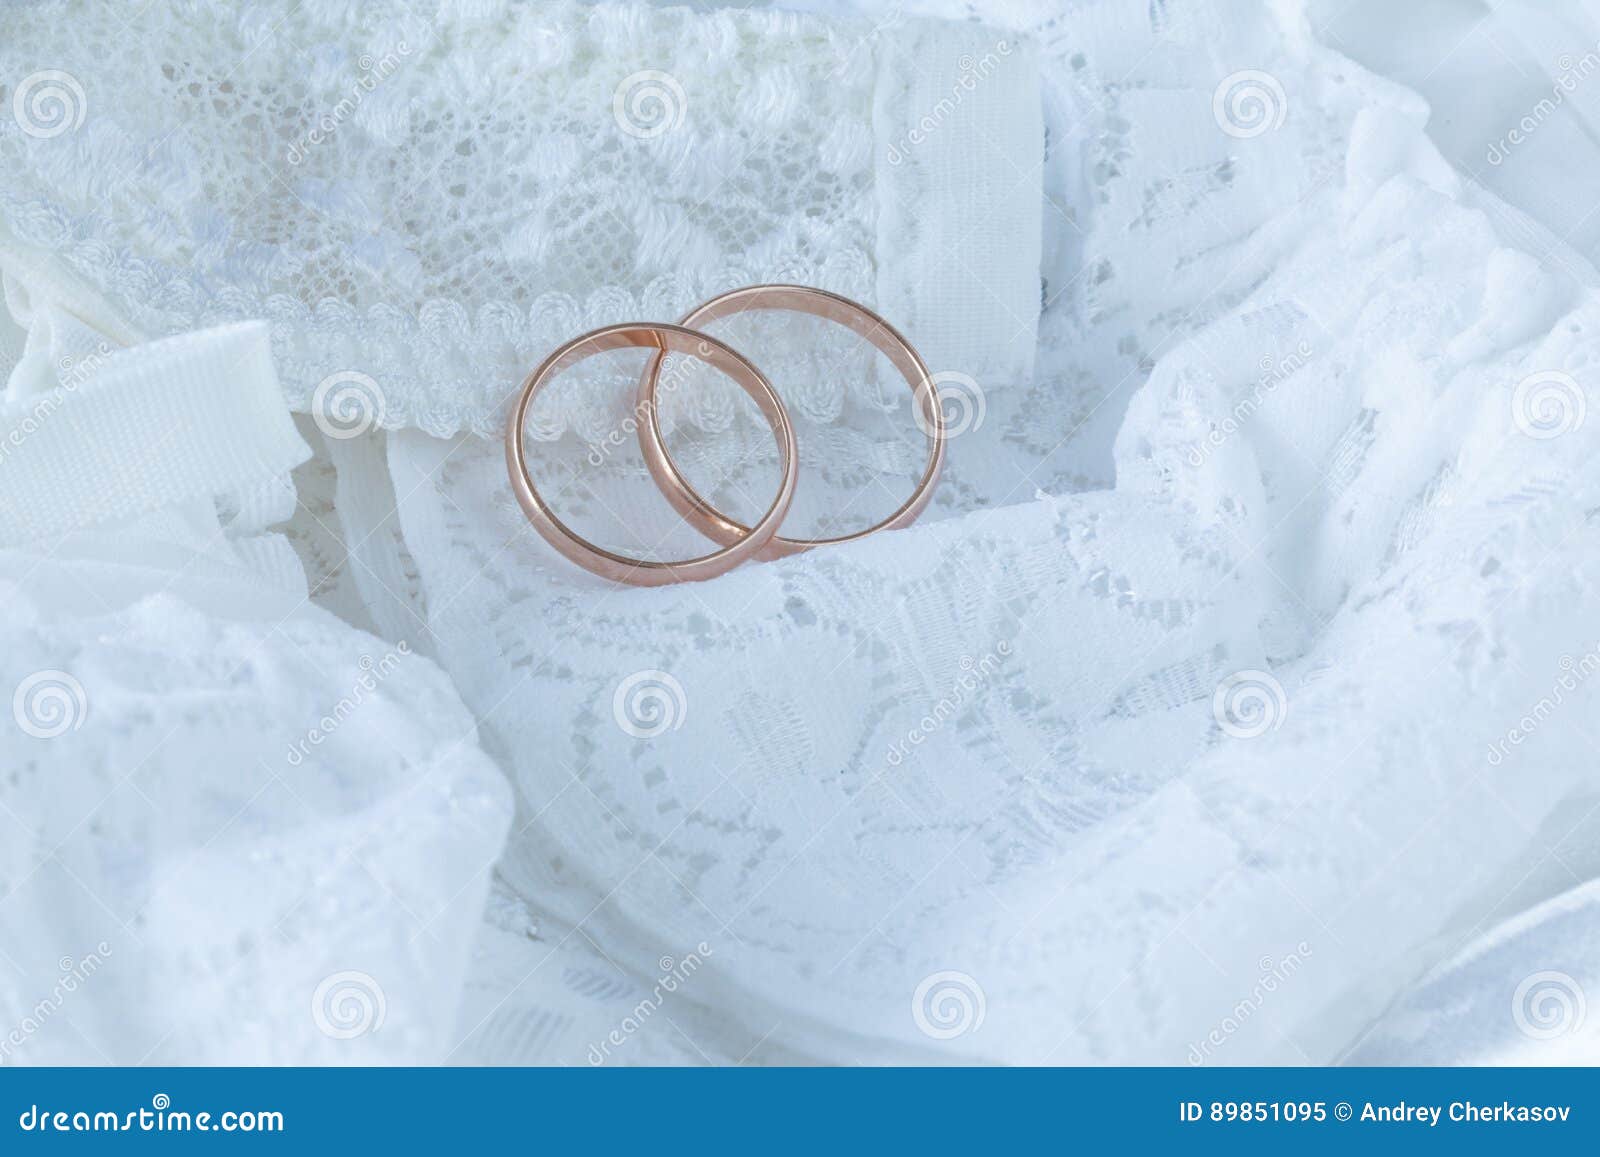 Wedding Dress Close Up Stock Image Image Of Frill Celebration